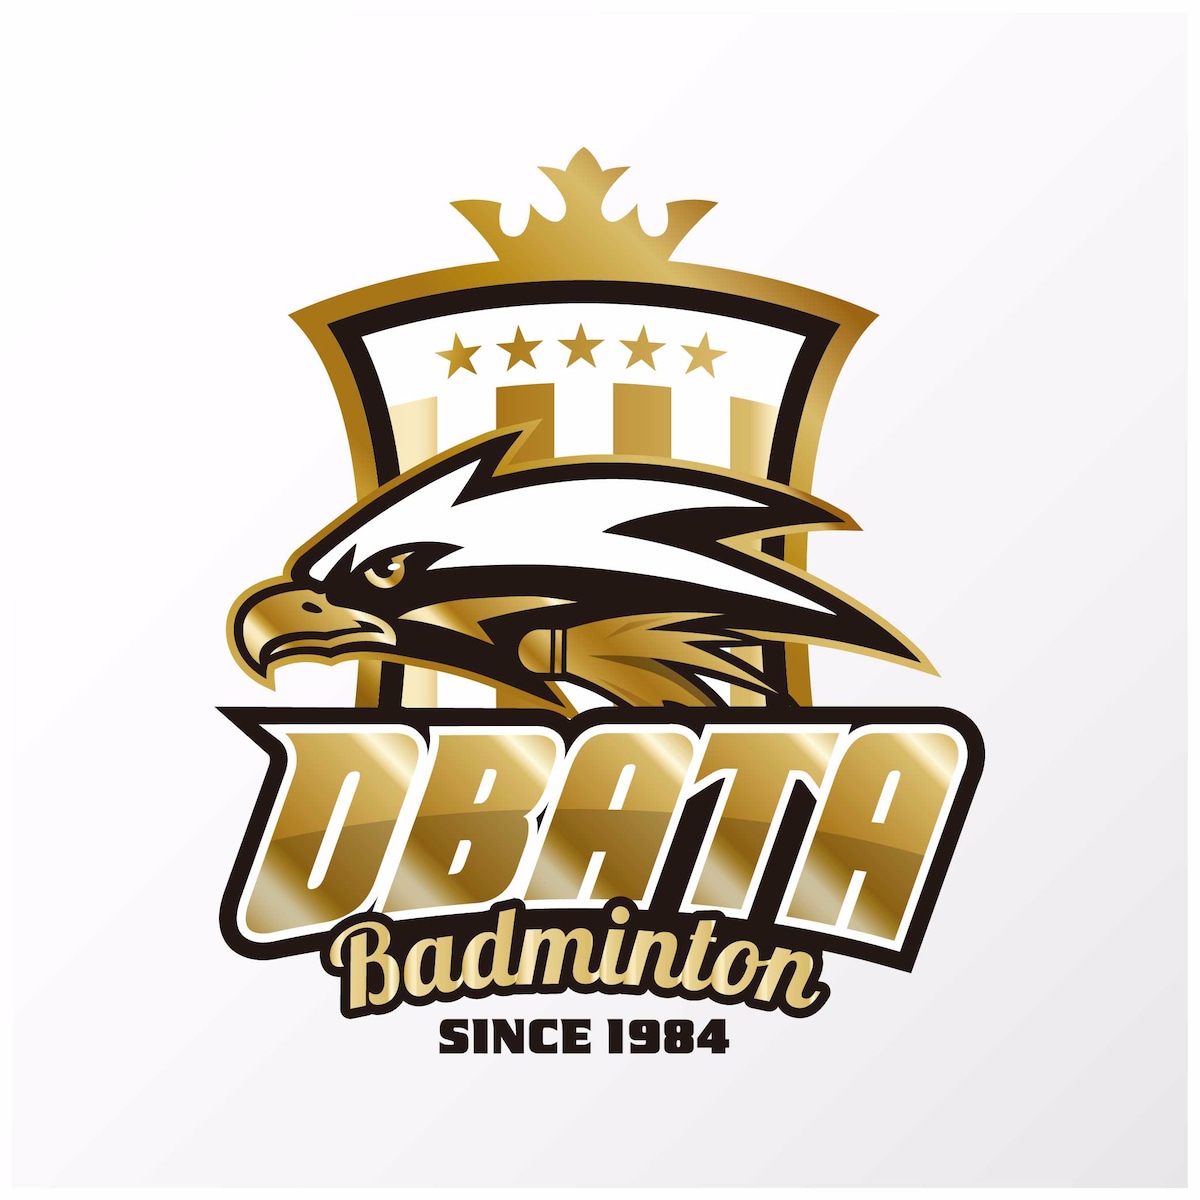 OBATA Badmintonチーム ロゴデザイン